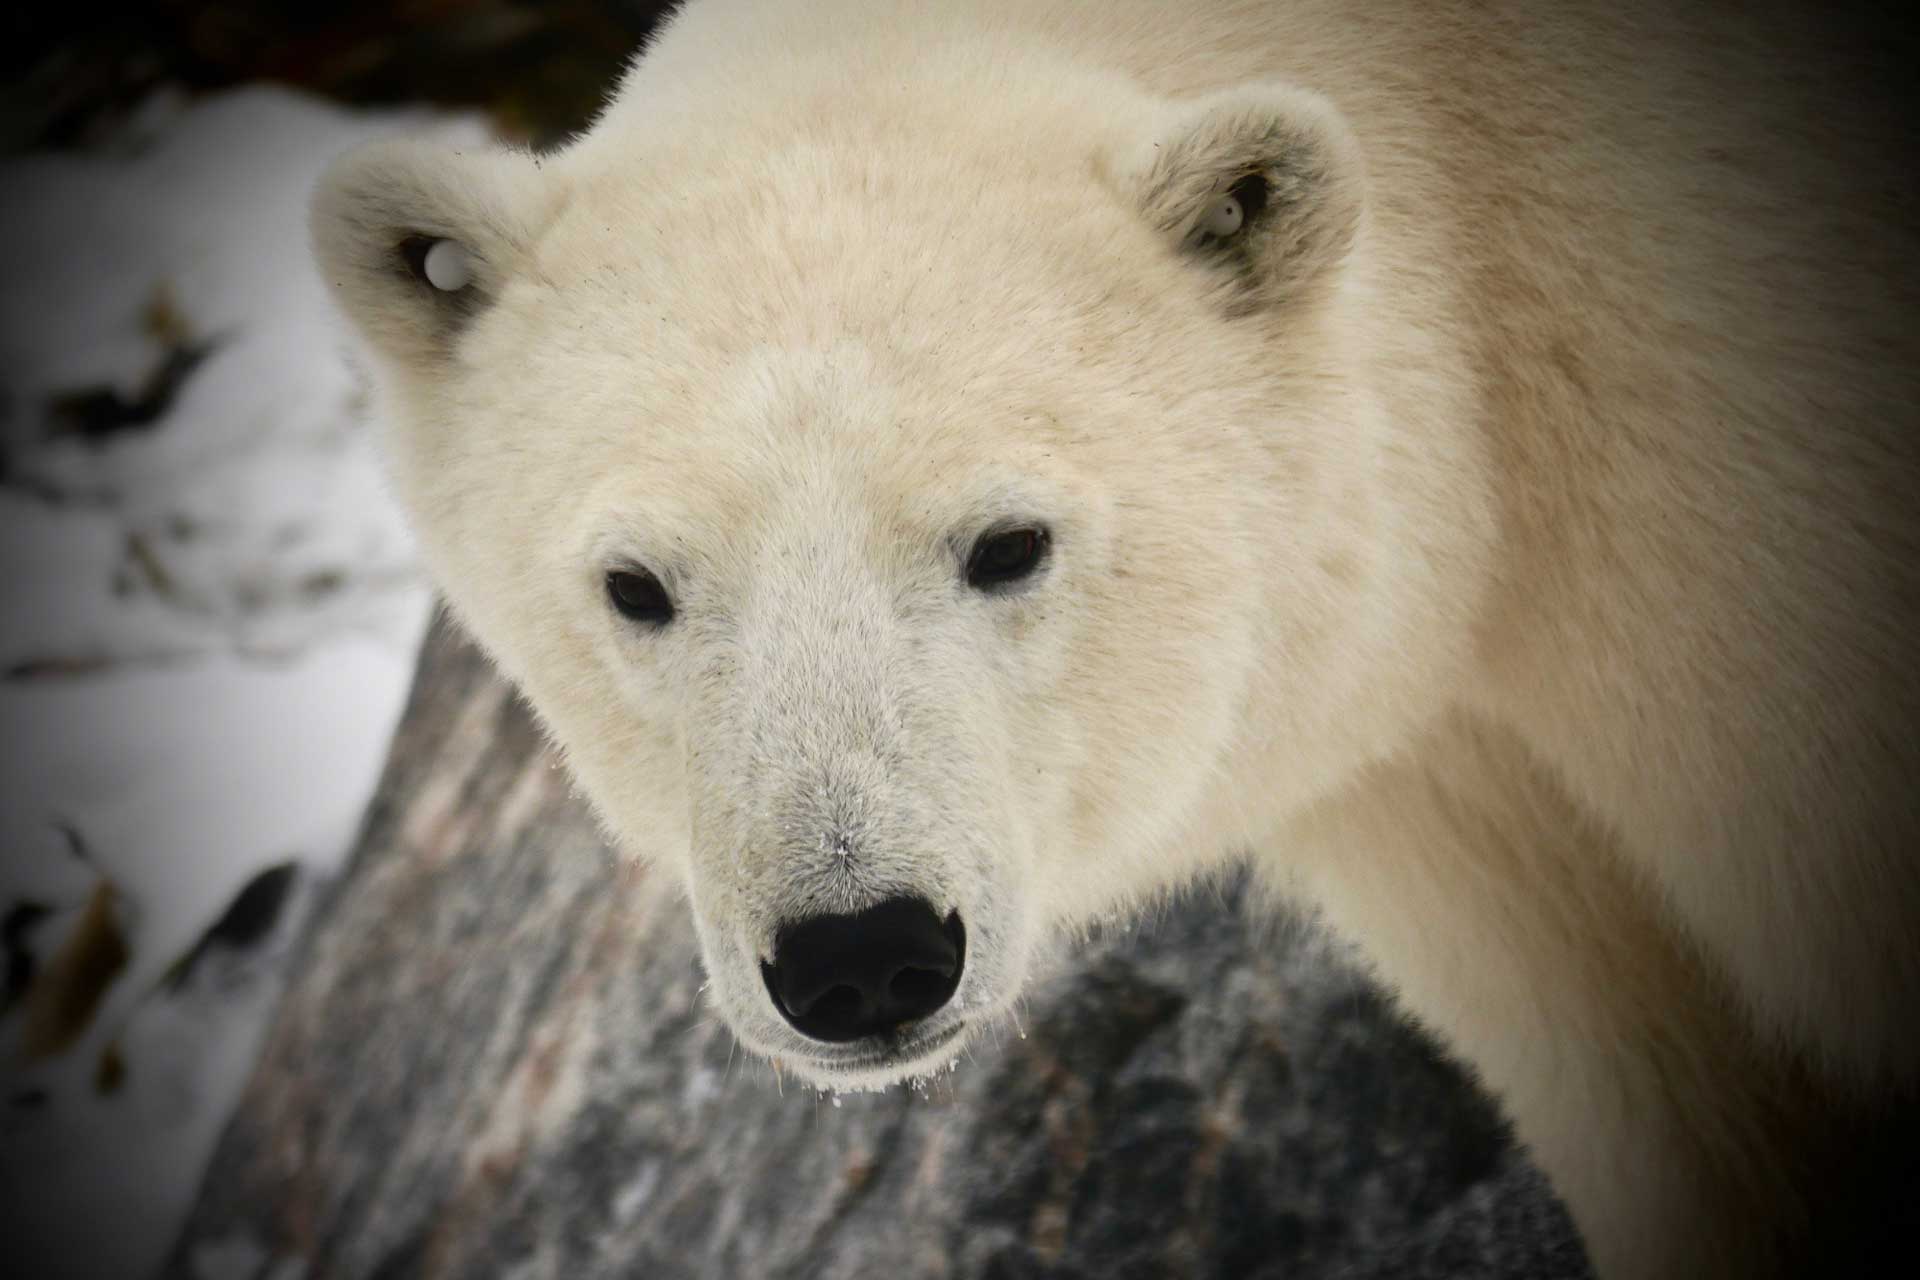 Young polar bear at Seal River Heritage Lodge. Barbara York photo.